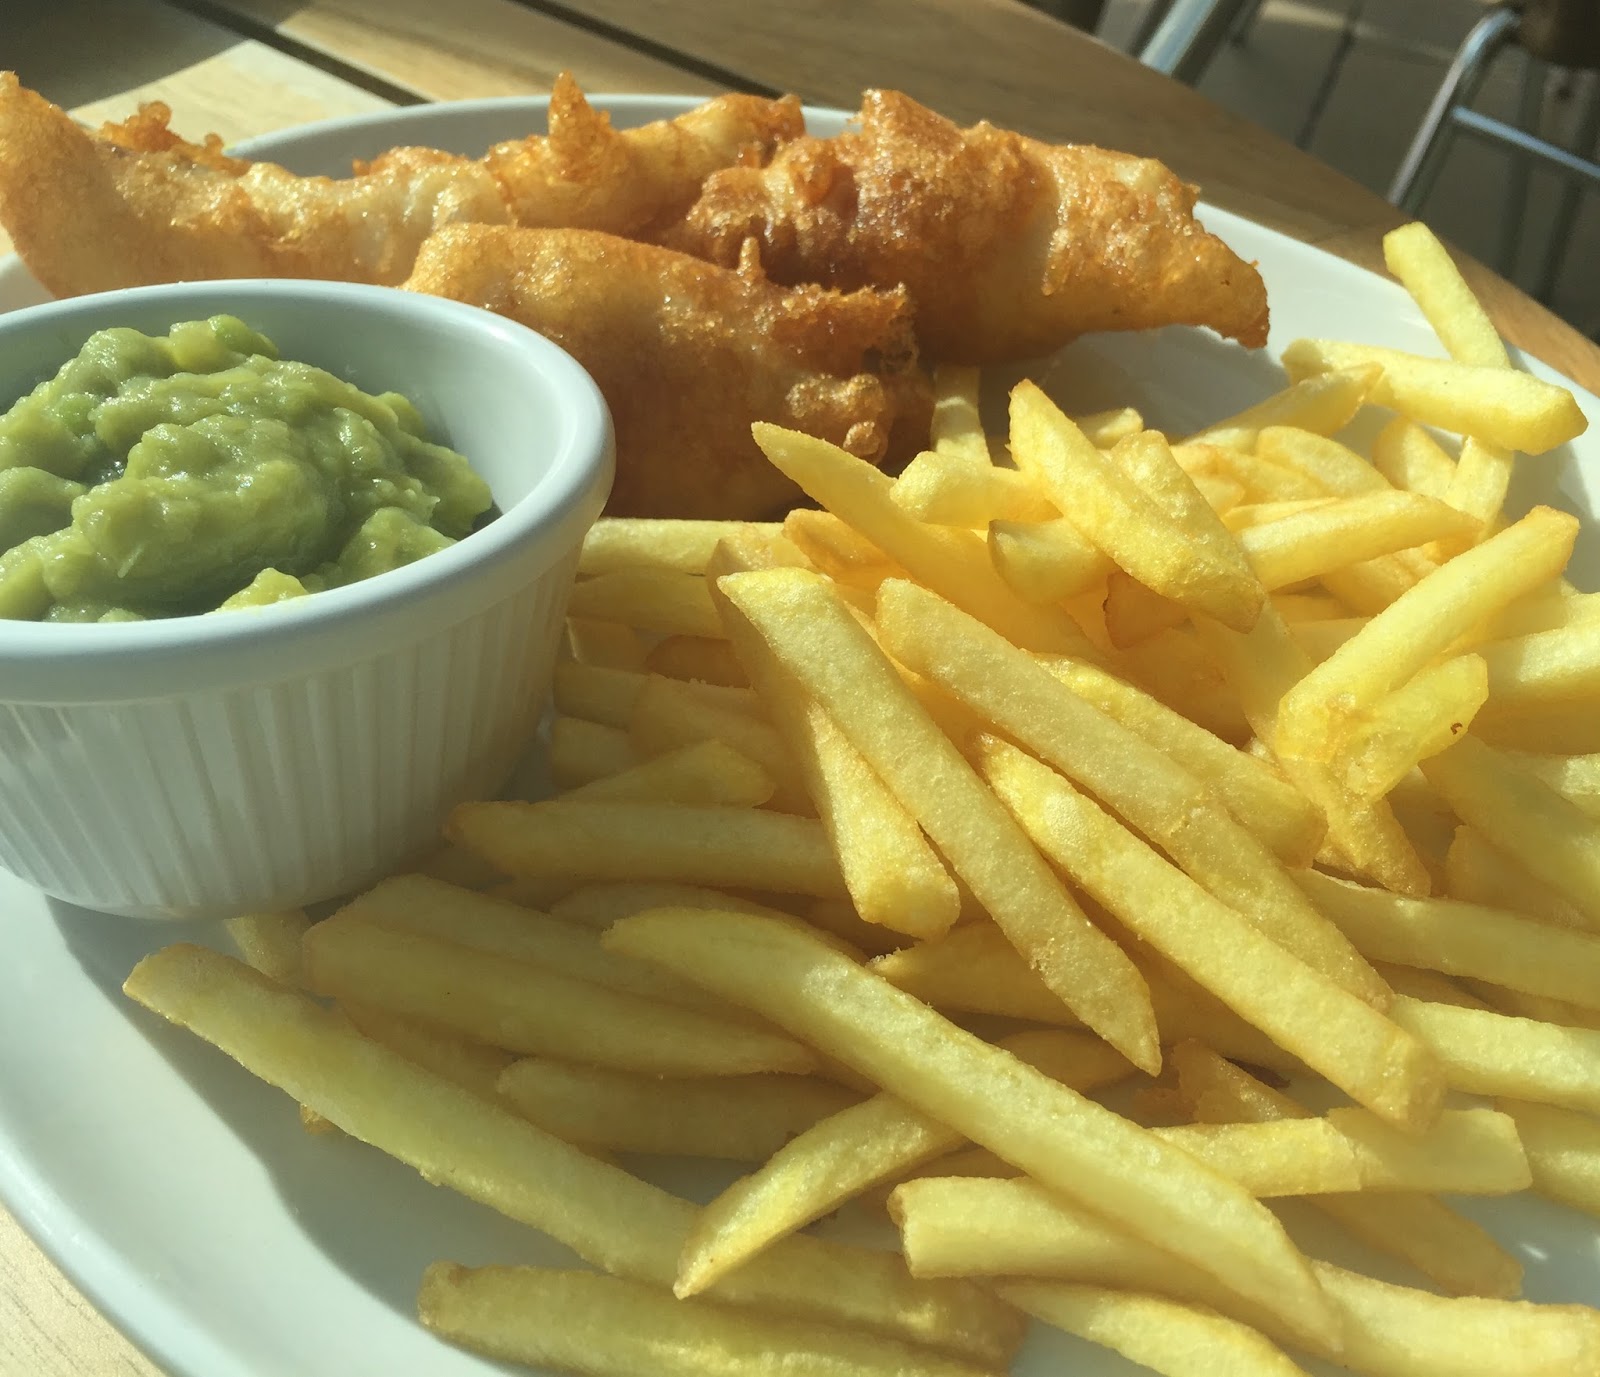 Fish & Chips Friday at Black Horse, Beamish - kids' fish and chips